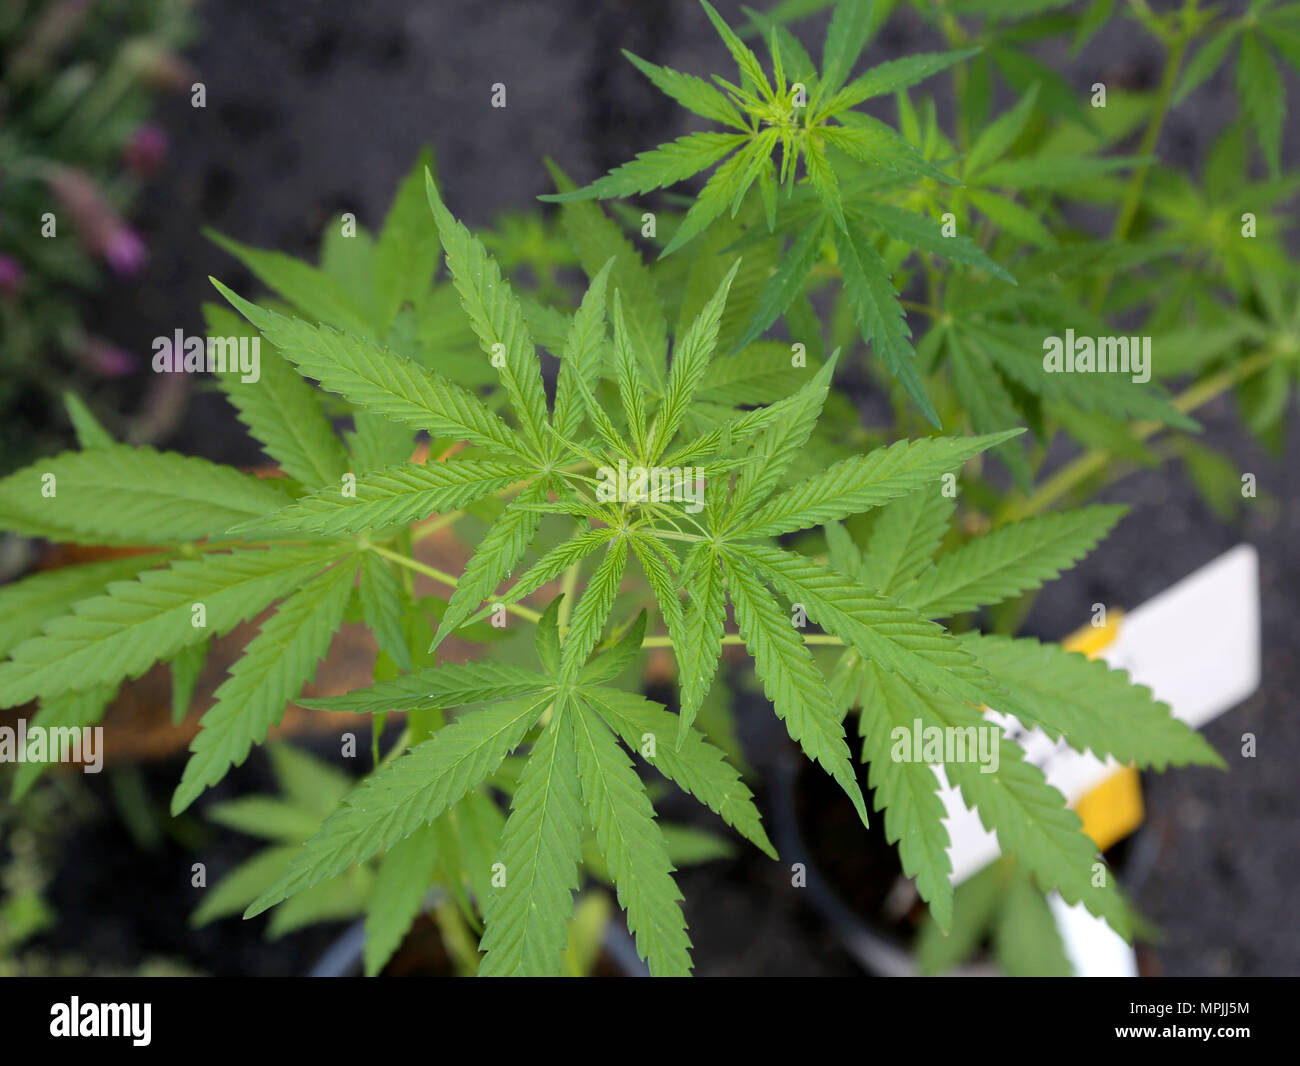 Pot illegale la coltivazione della cannabis sativa pianta di produrre i cannabinoidi possono essere somministrati mediante vaporizzazione di fumare o ingestione orale Foto Stock